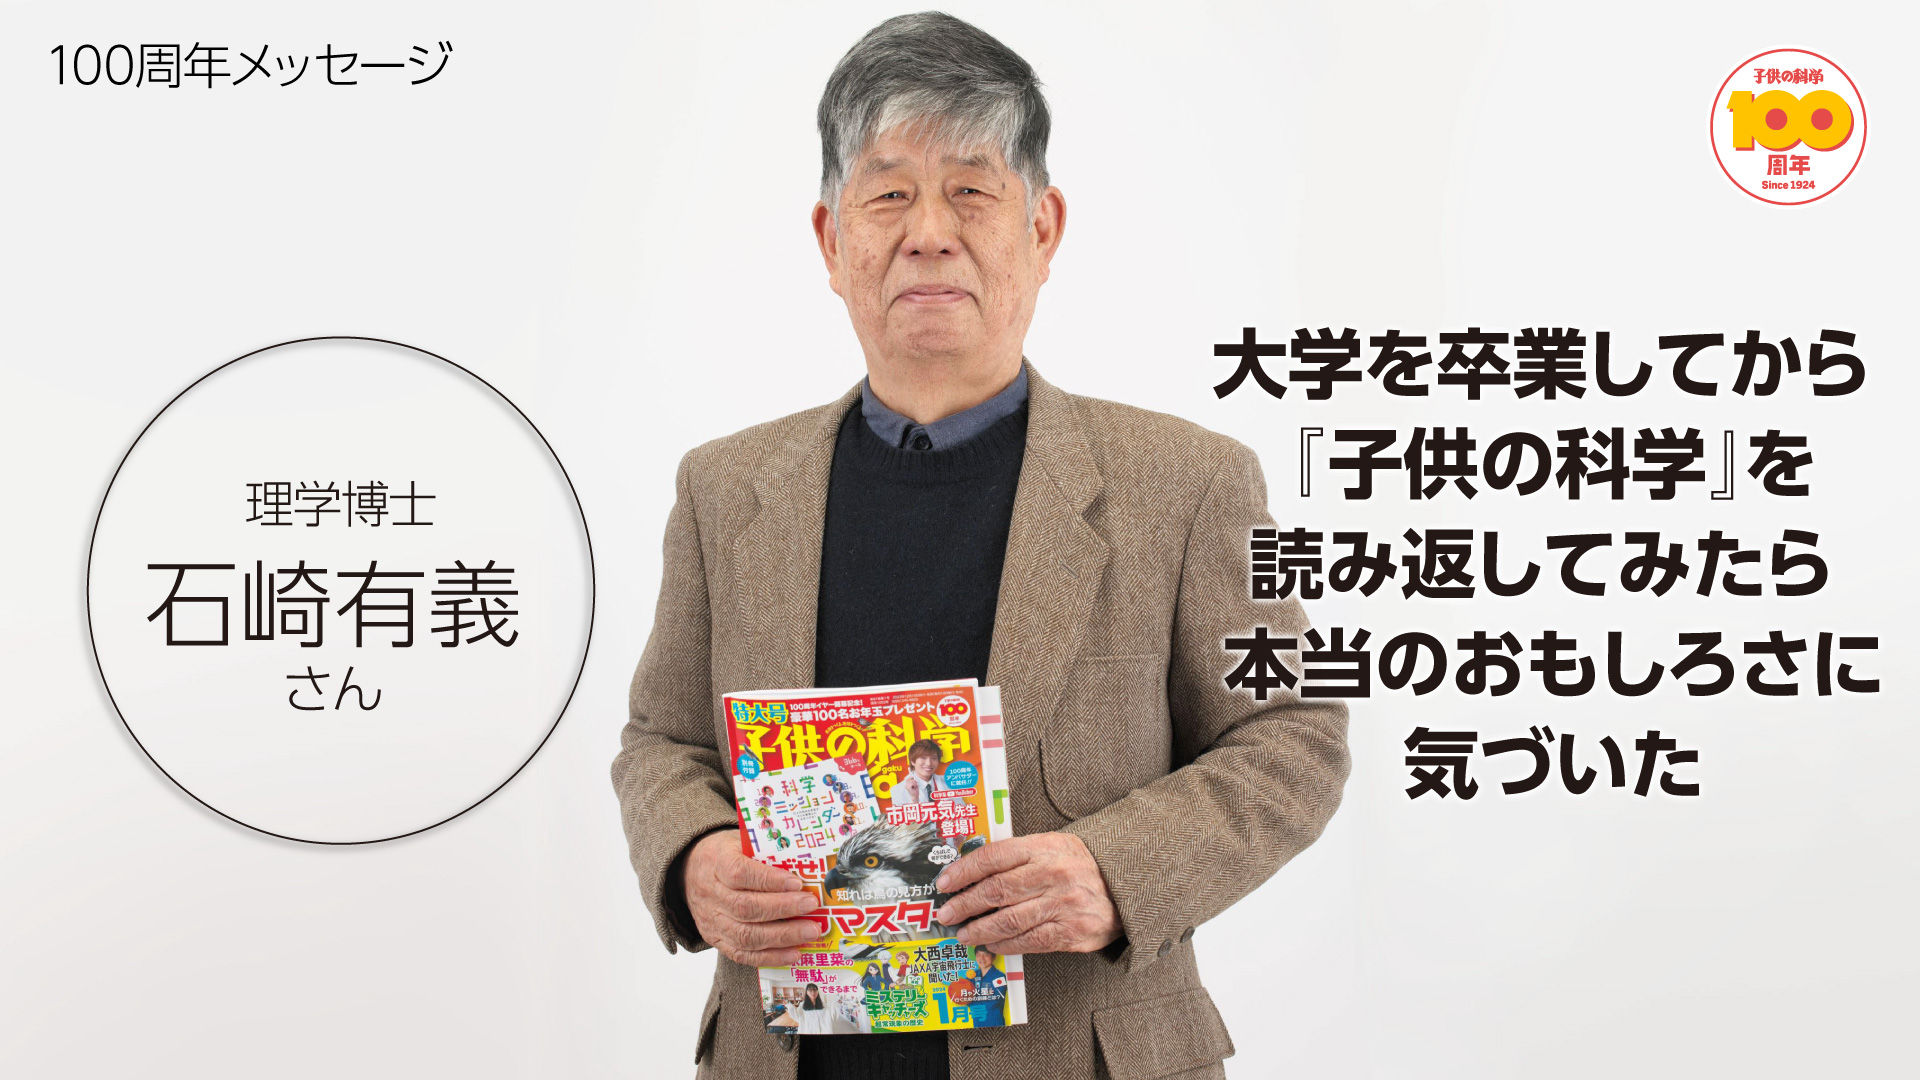 『子供の科学』創刊100周年メッセージ★石崎有義さん